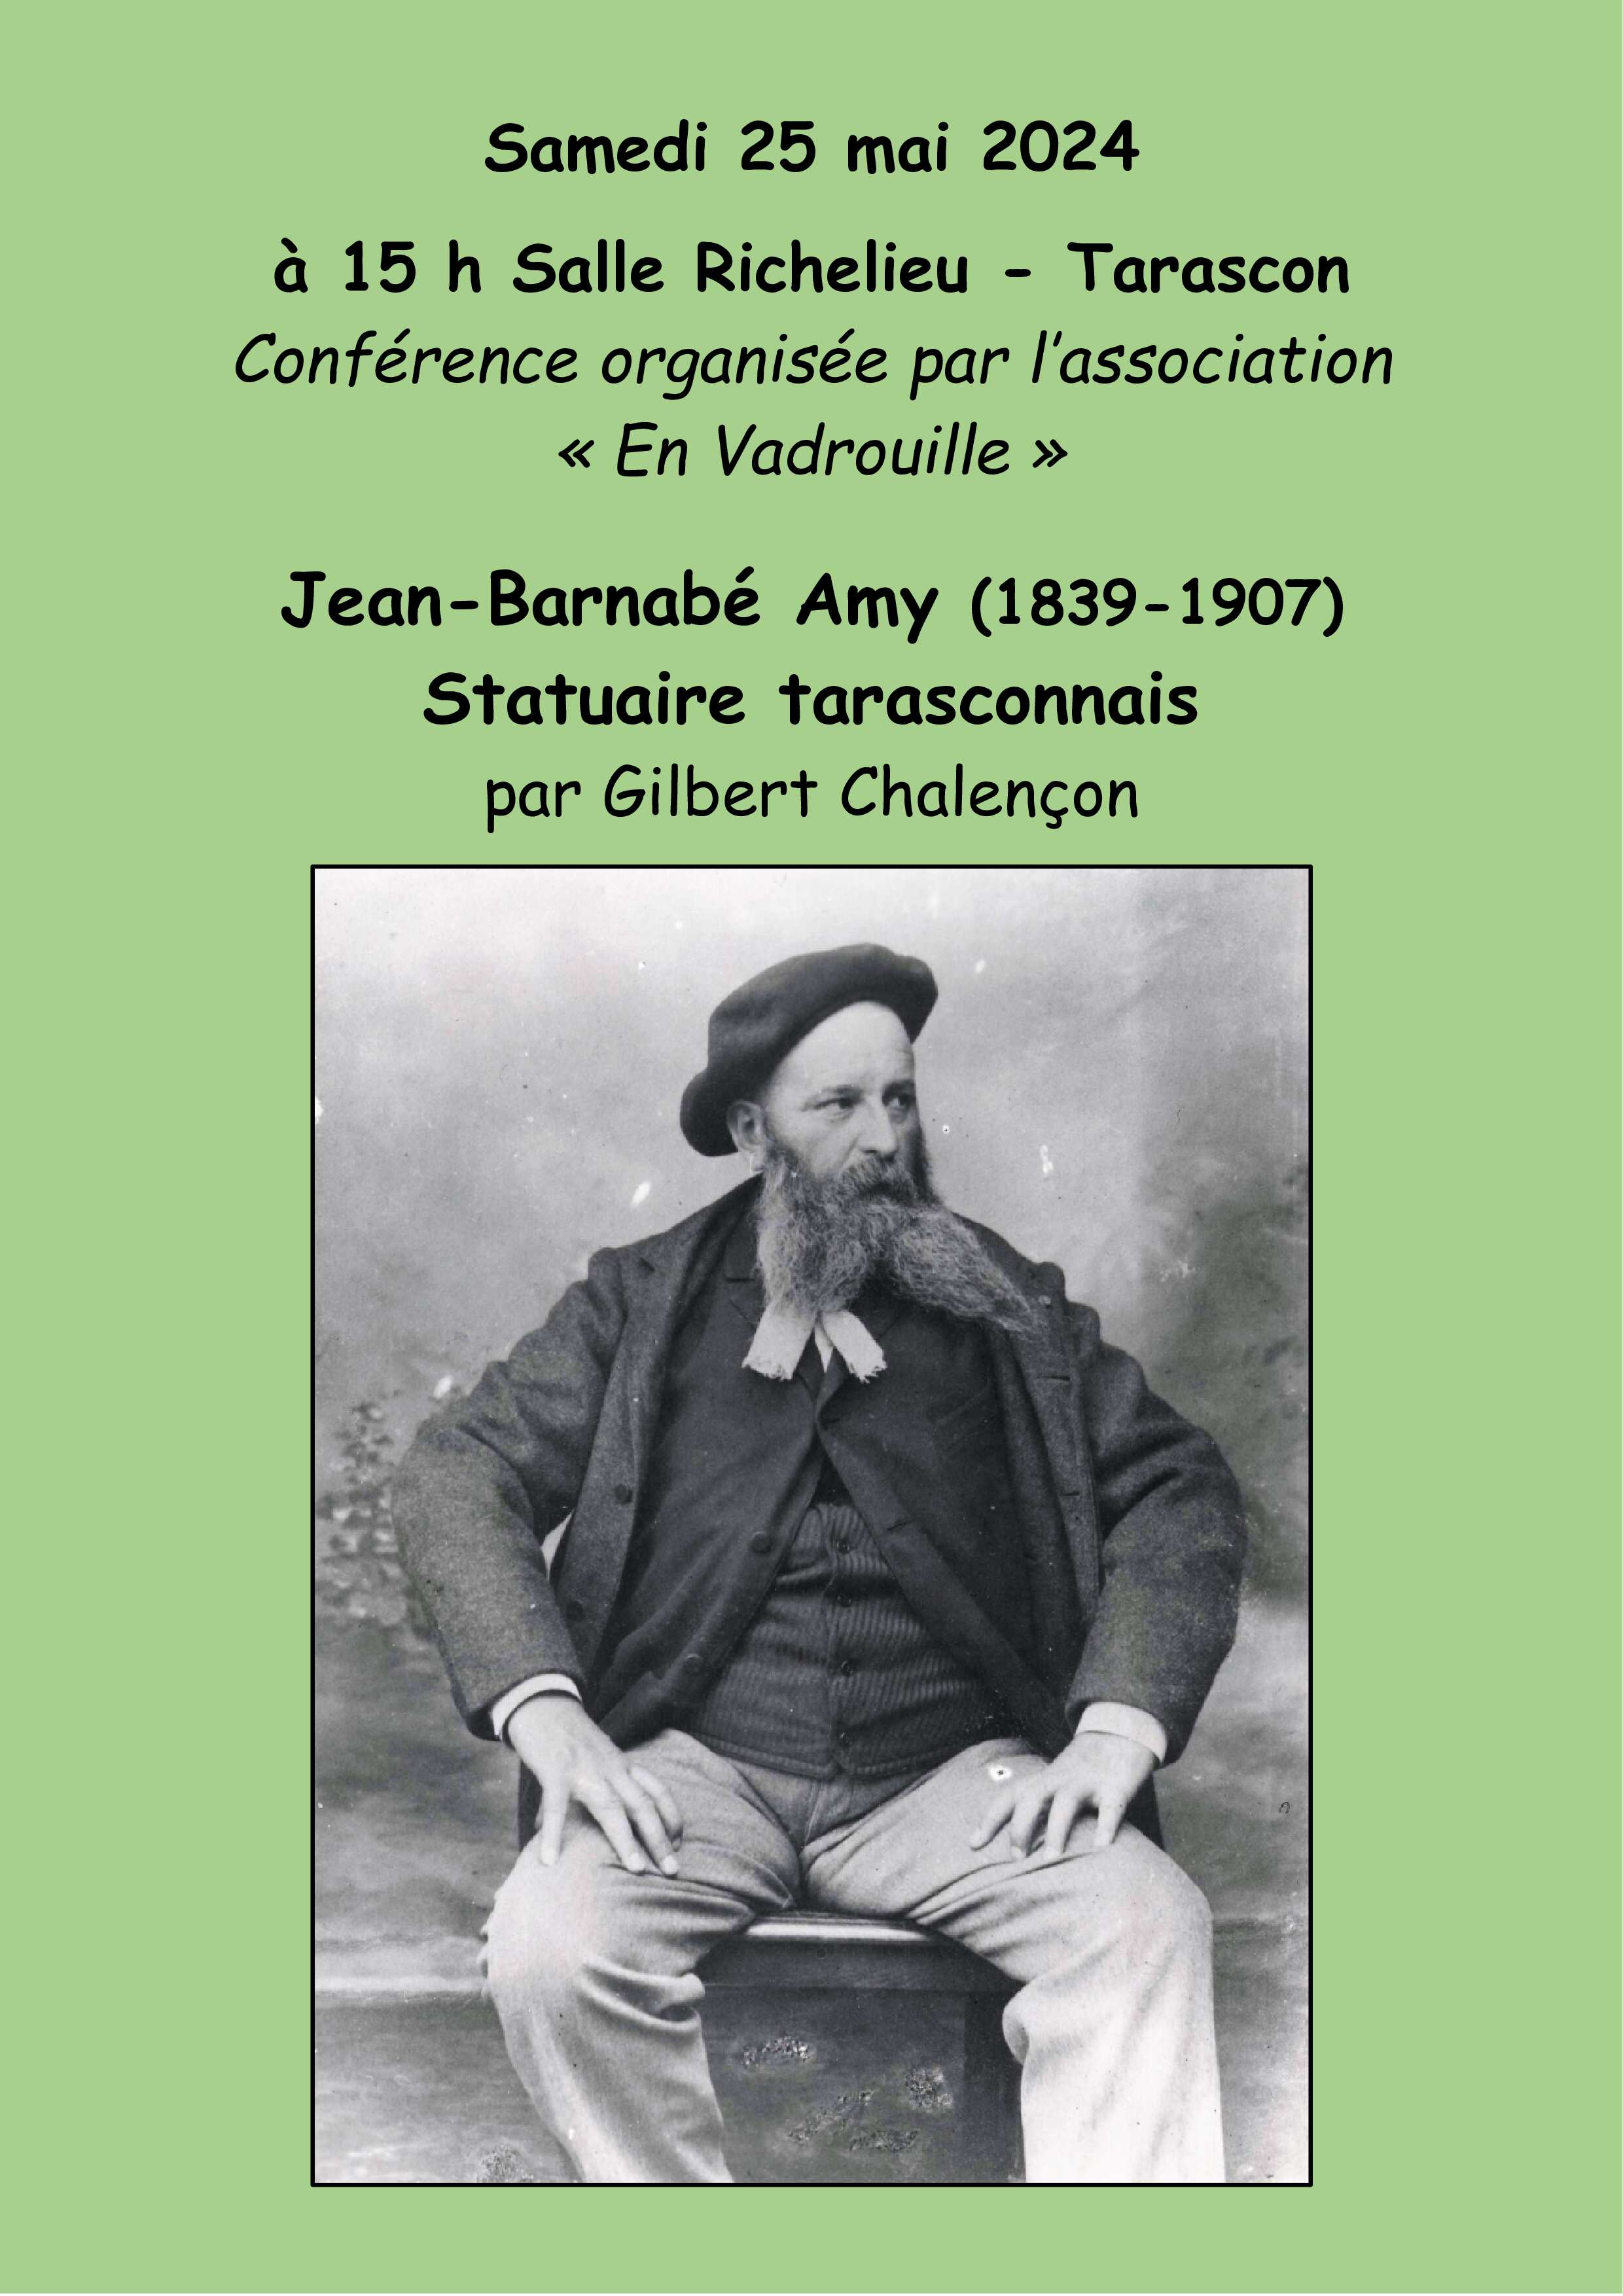 Conférence/Jean-Barnabé Amy/Statuaire Tarasconnais null France null null null null